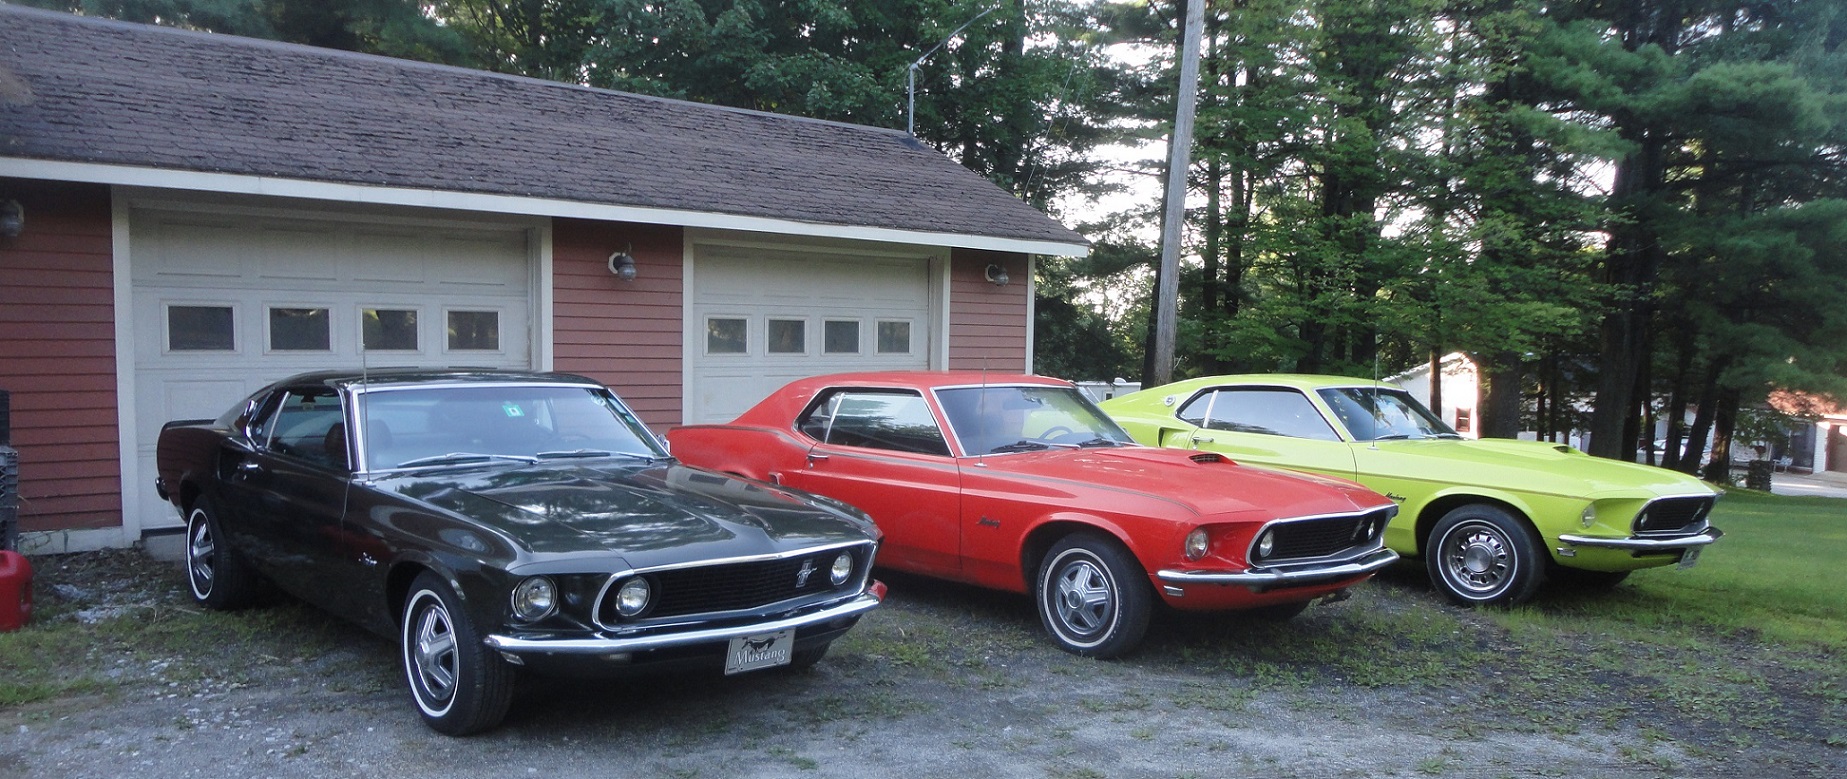 3 Mustangs